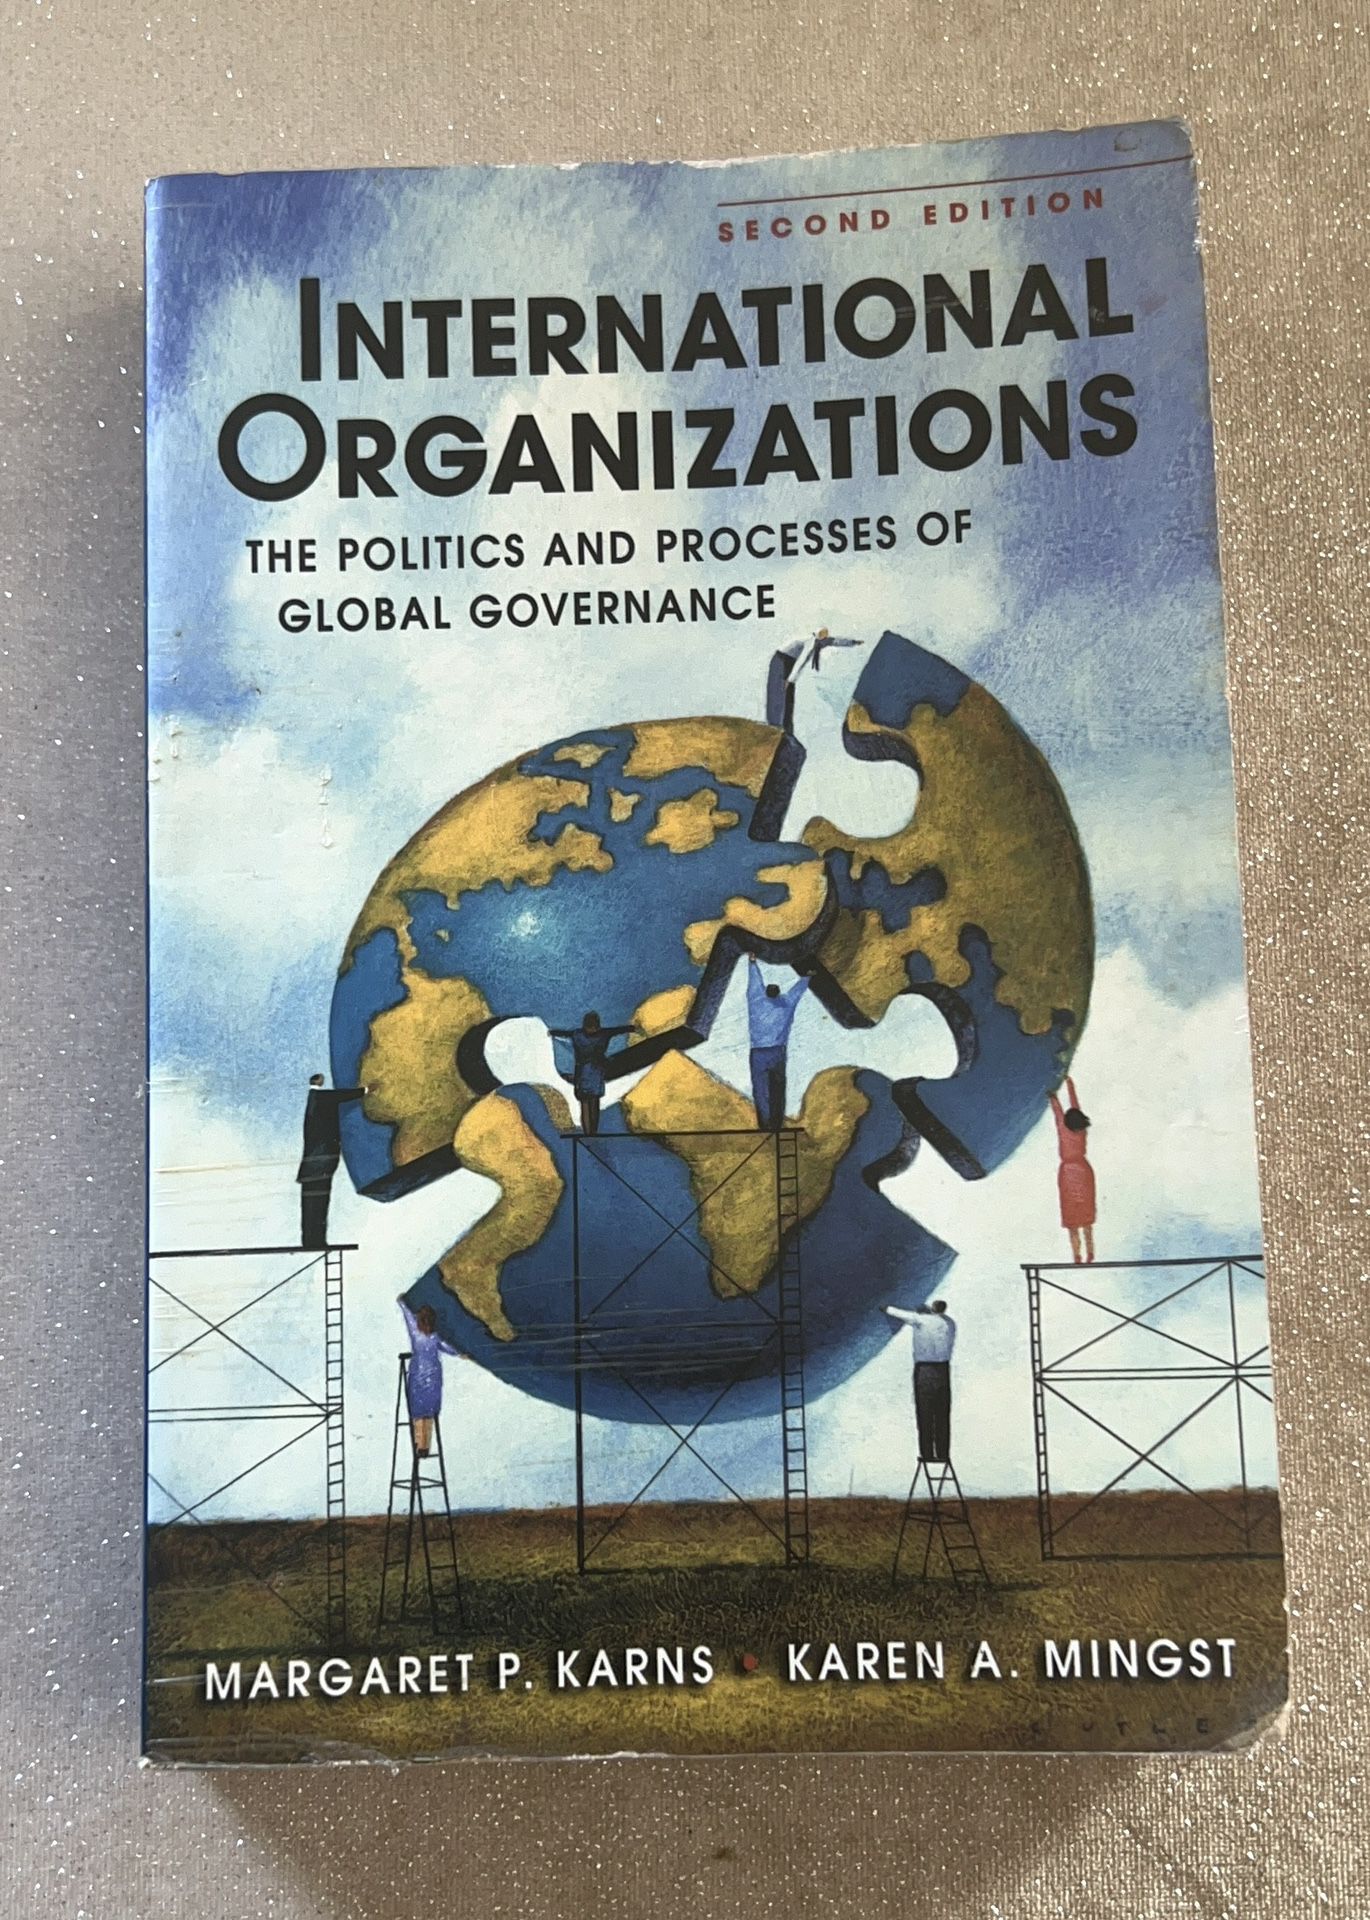 International Organizations 2nd edition by Margaret P. Karen's